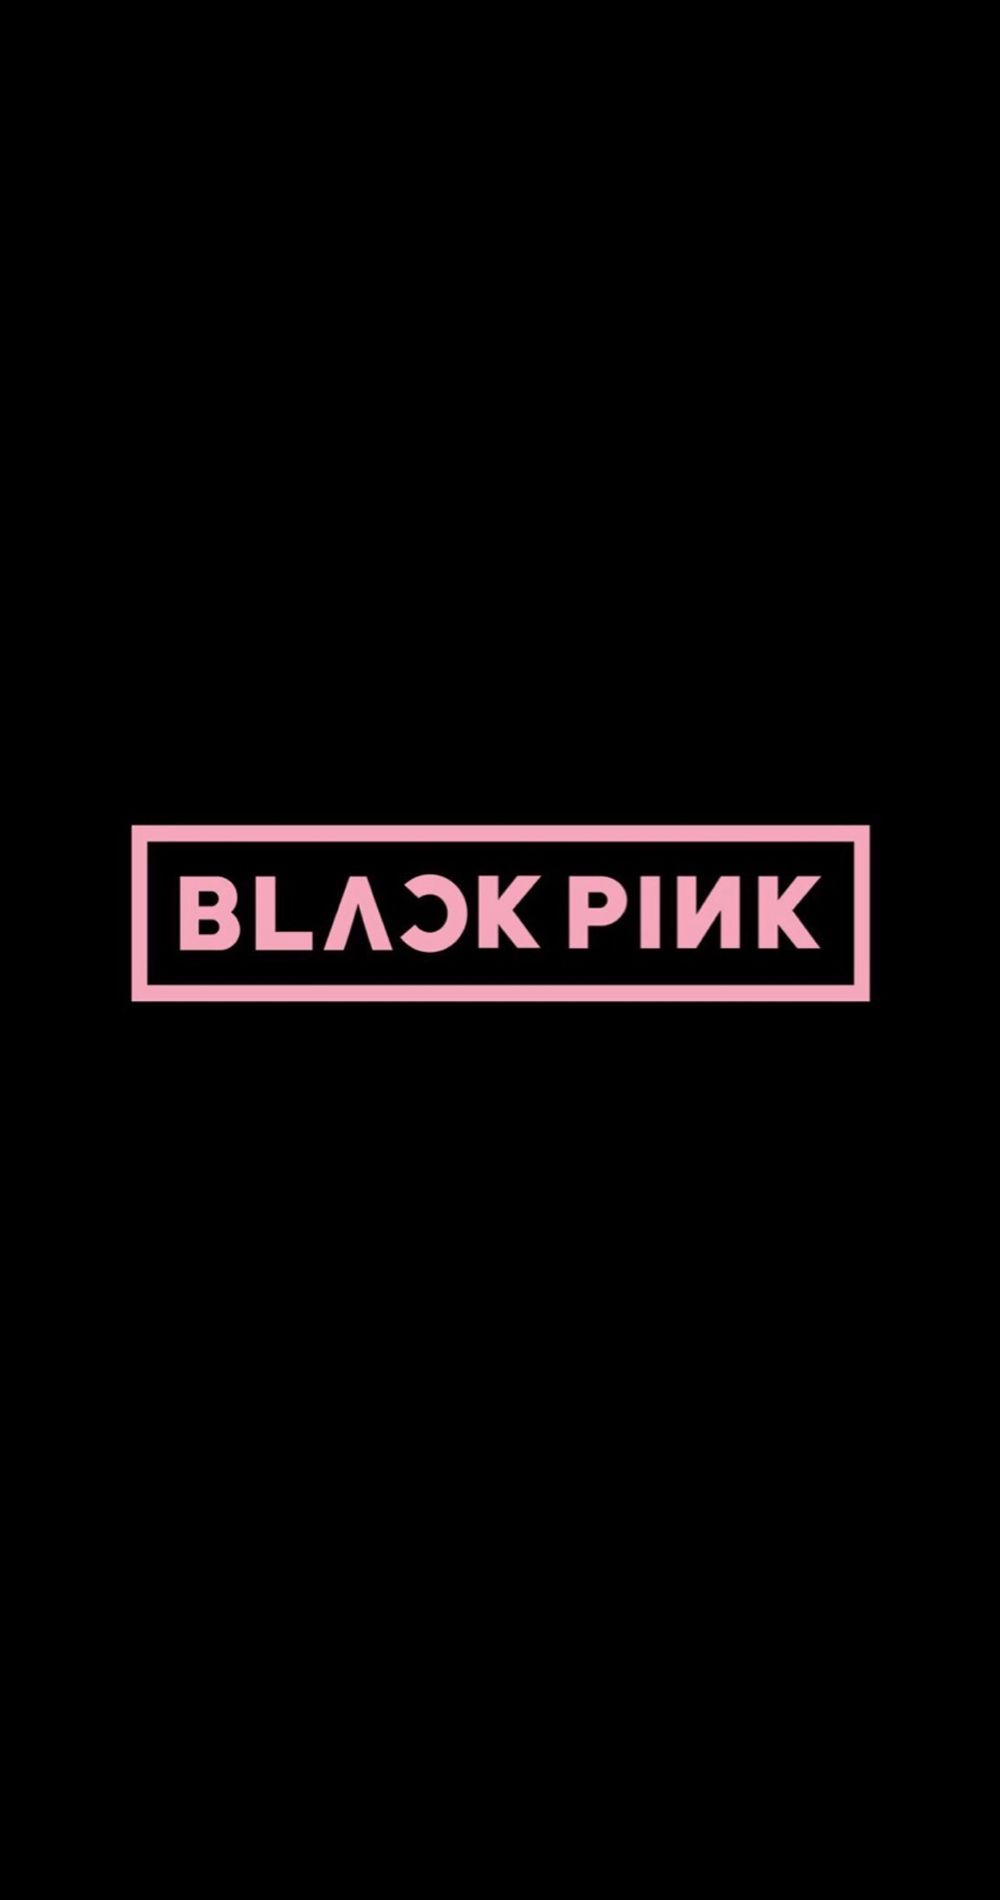 Kpop phone wallpapers hãnh áºnh áºnh tæáng cho äián thoáºi black pink